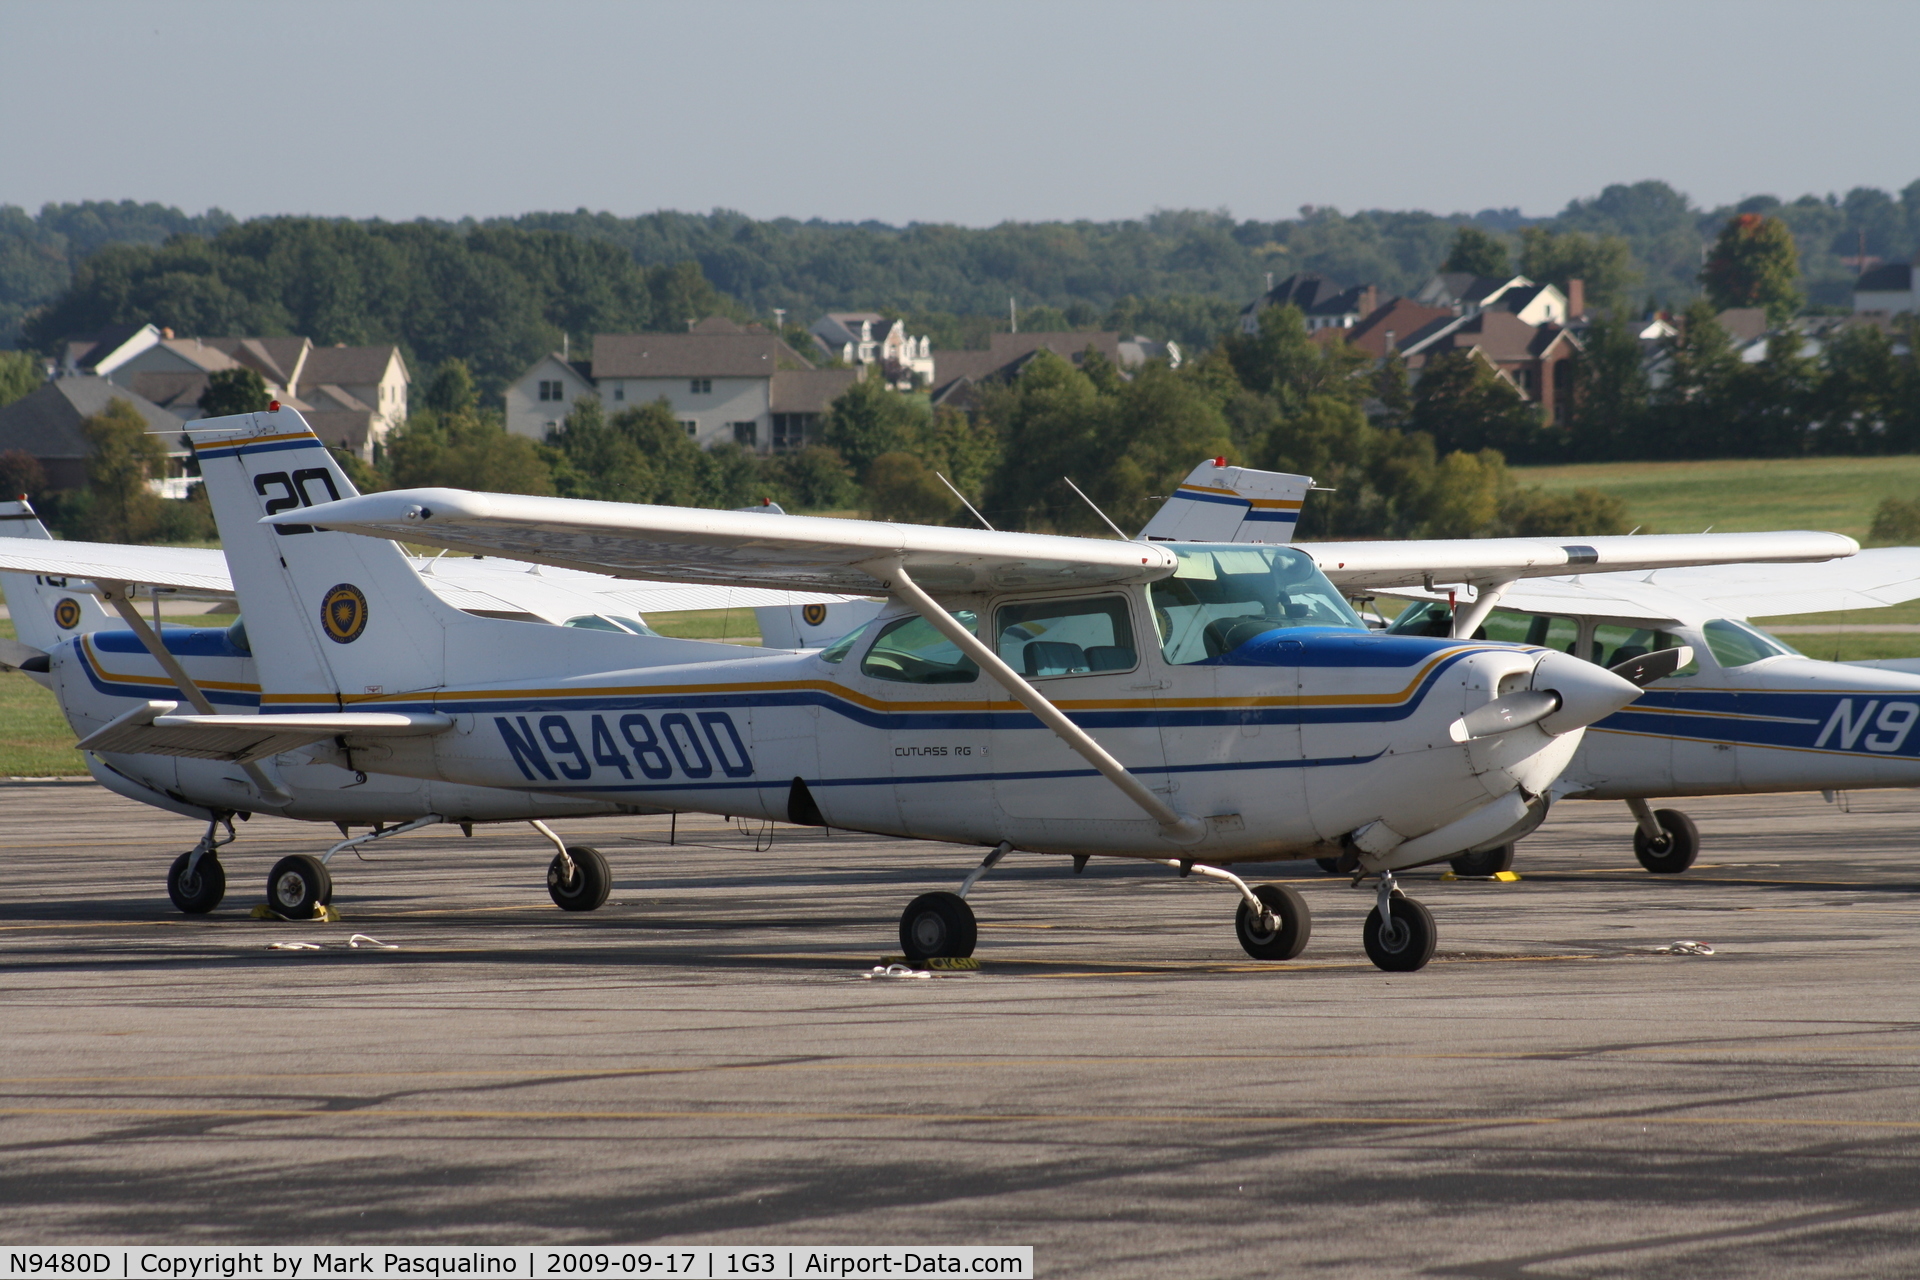 N9480D, 1985 Cessna 172RG Cutlass RG C/N 172RG1180, Cessna 172RG